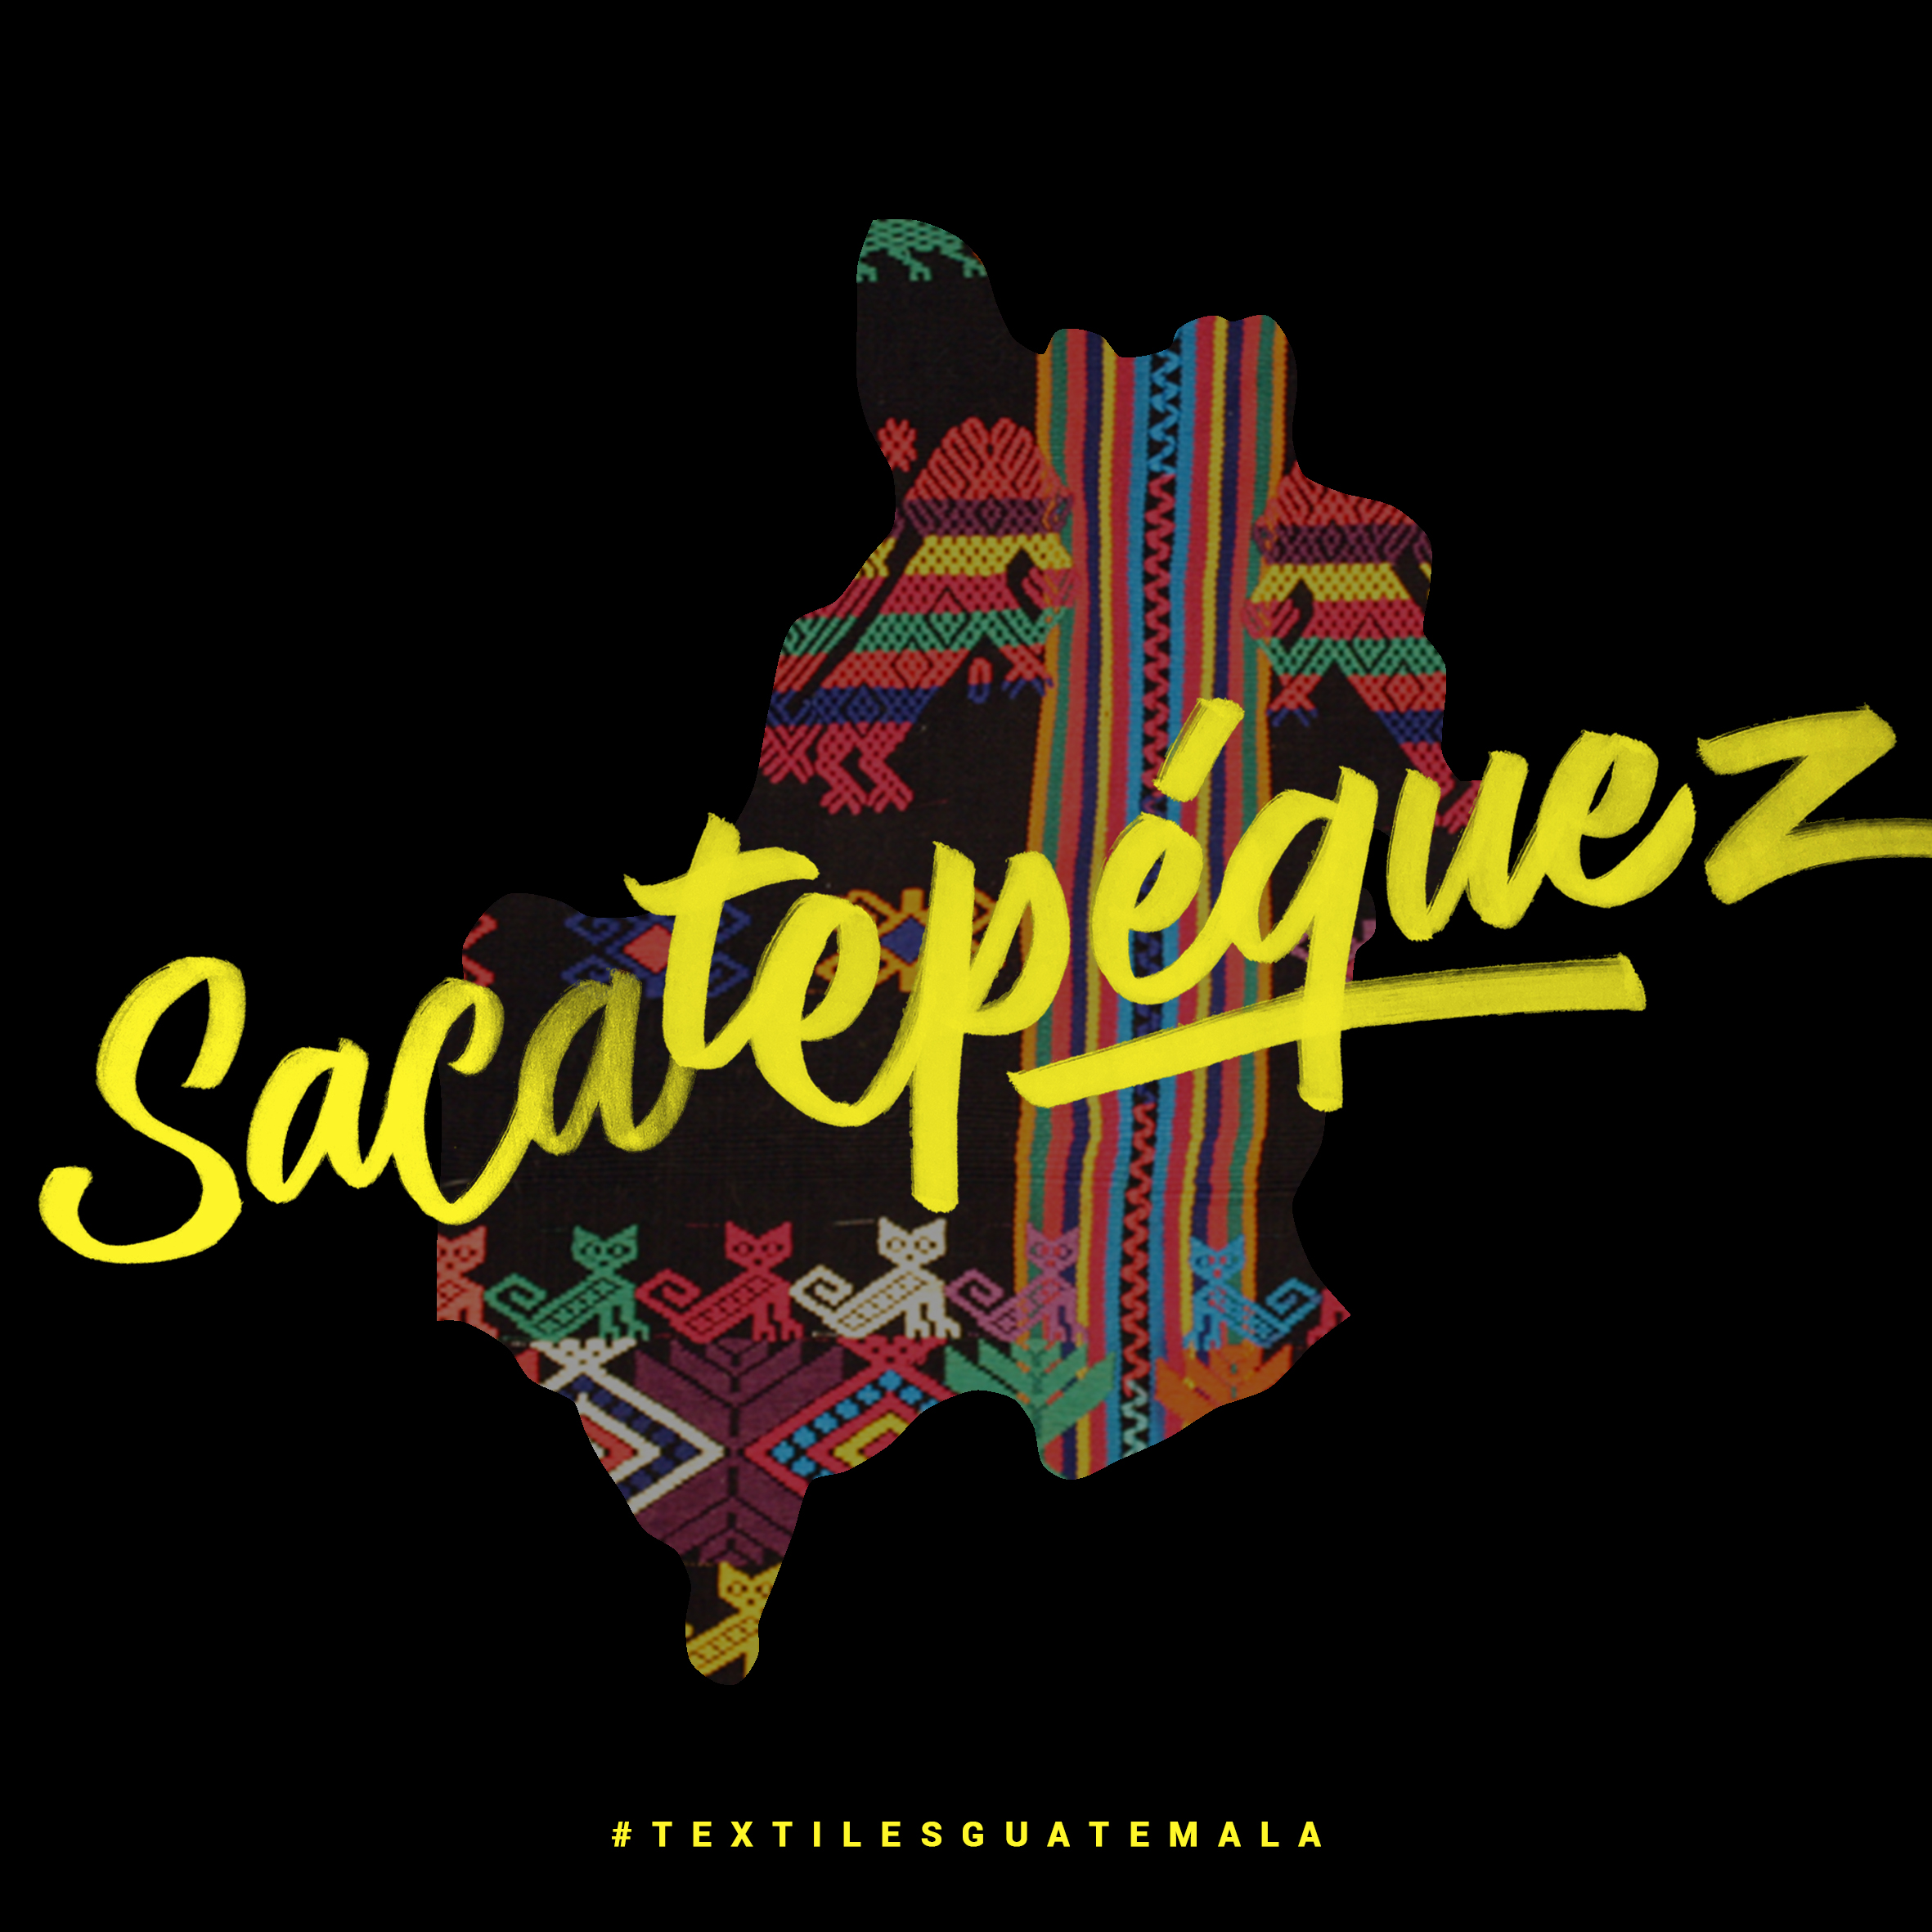 Sacatepequez.jpg